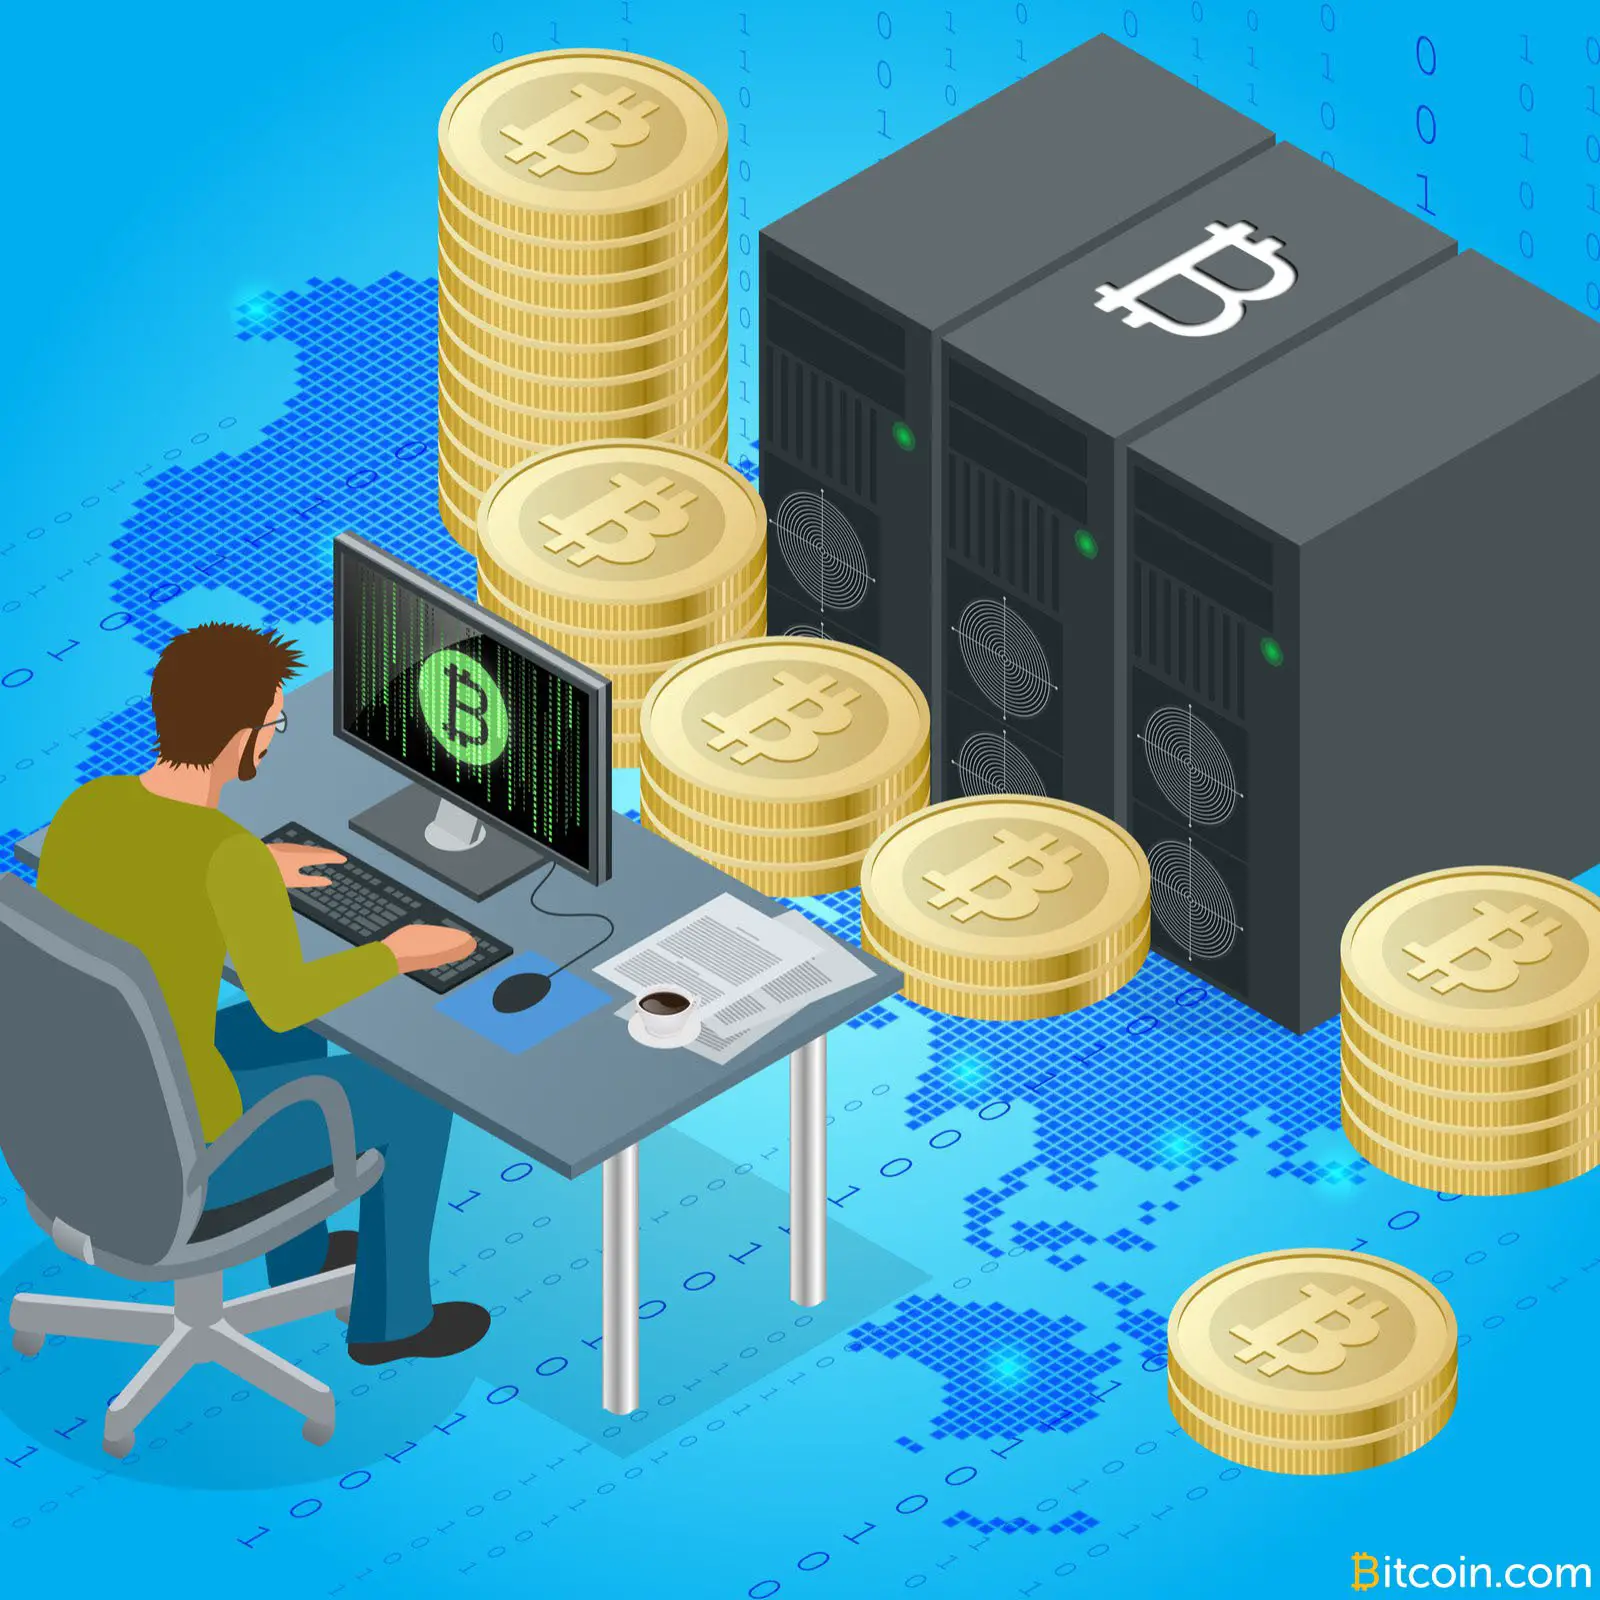 Is Bitcoin Mining Business Still Profitable